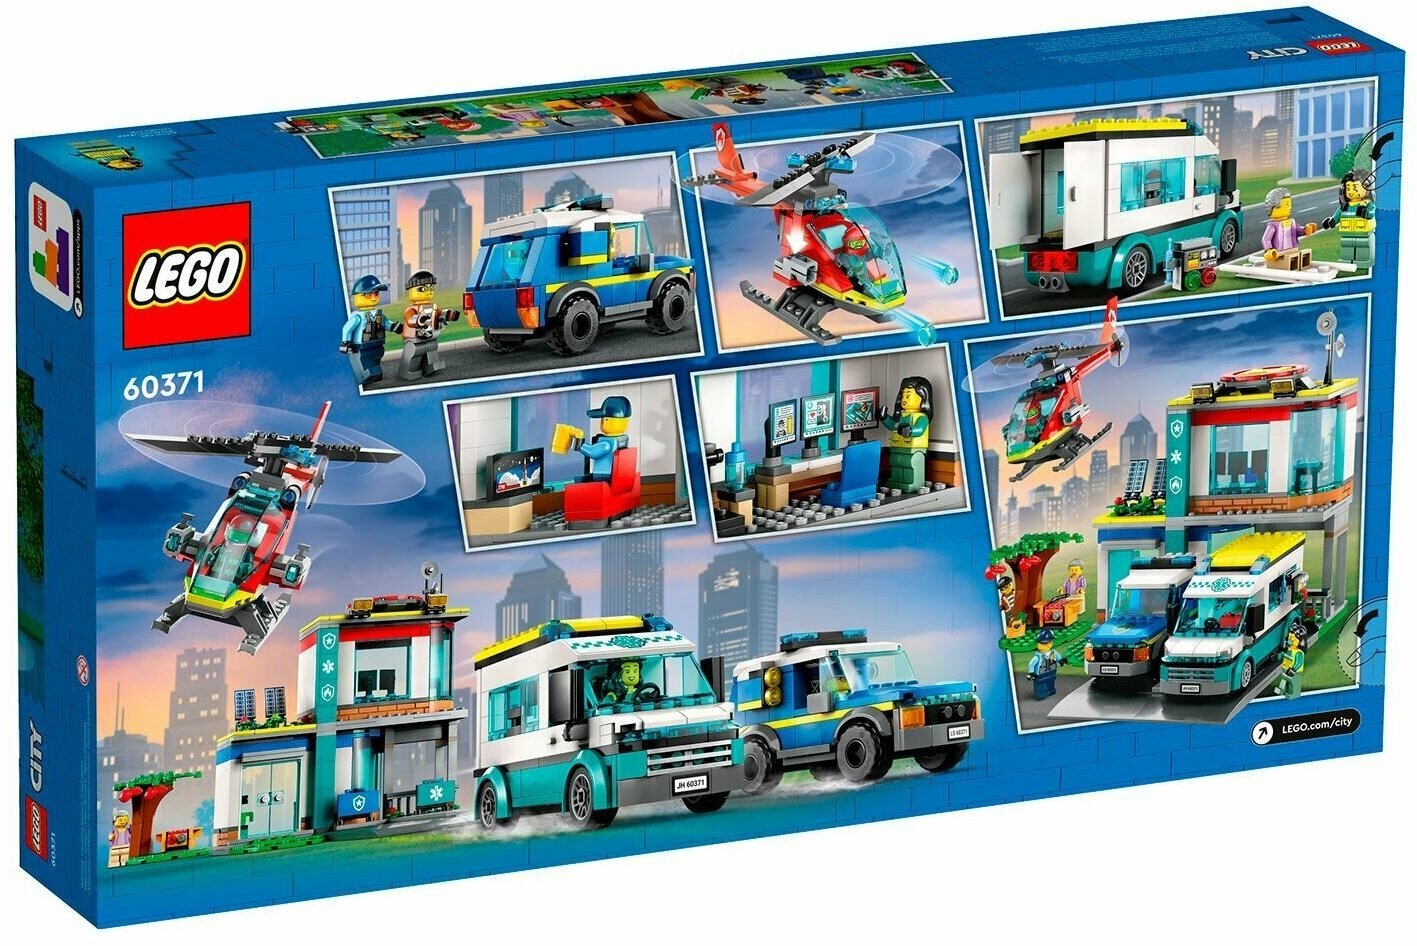 Конструктор детский LEGO City 60371 Штаб-квартира спасательных транспортных средств, 706 деталей, 6+